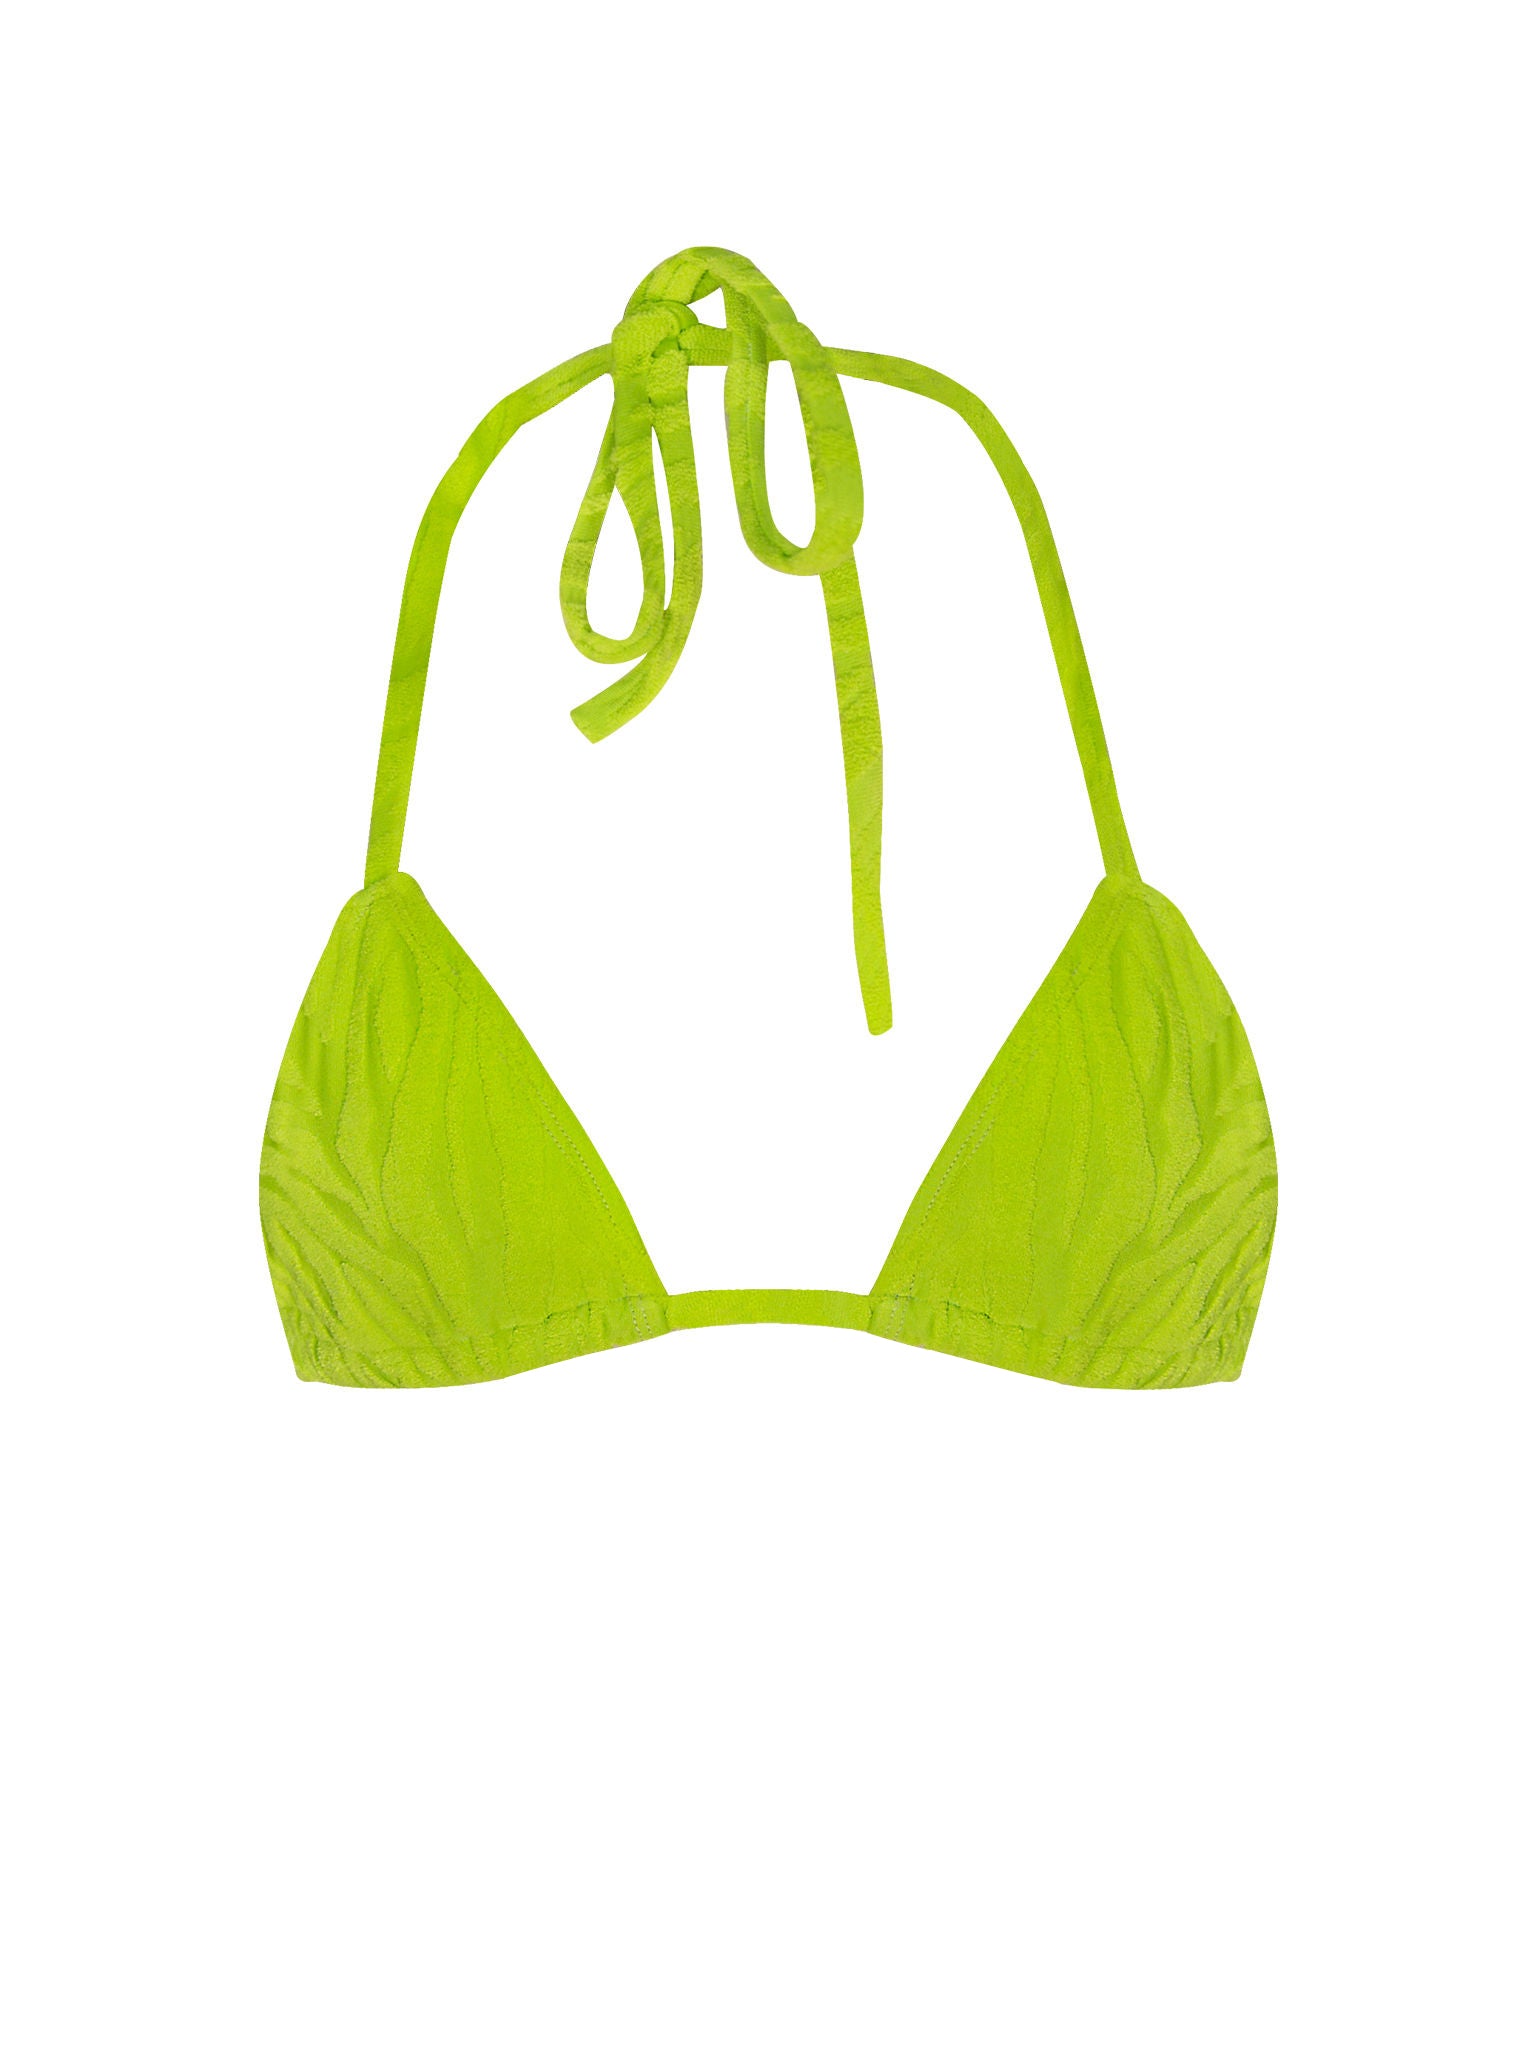 Halter Triangle Bikini Top - Lime Green